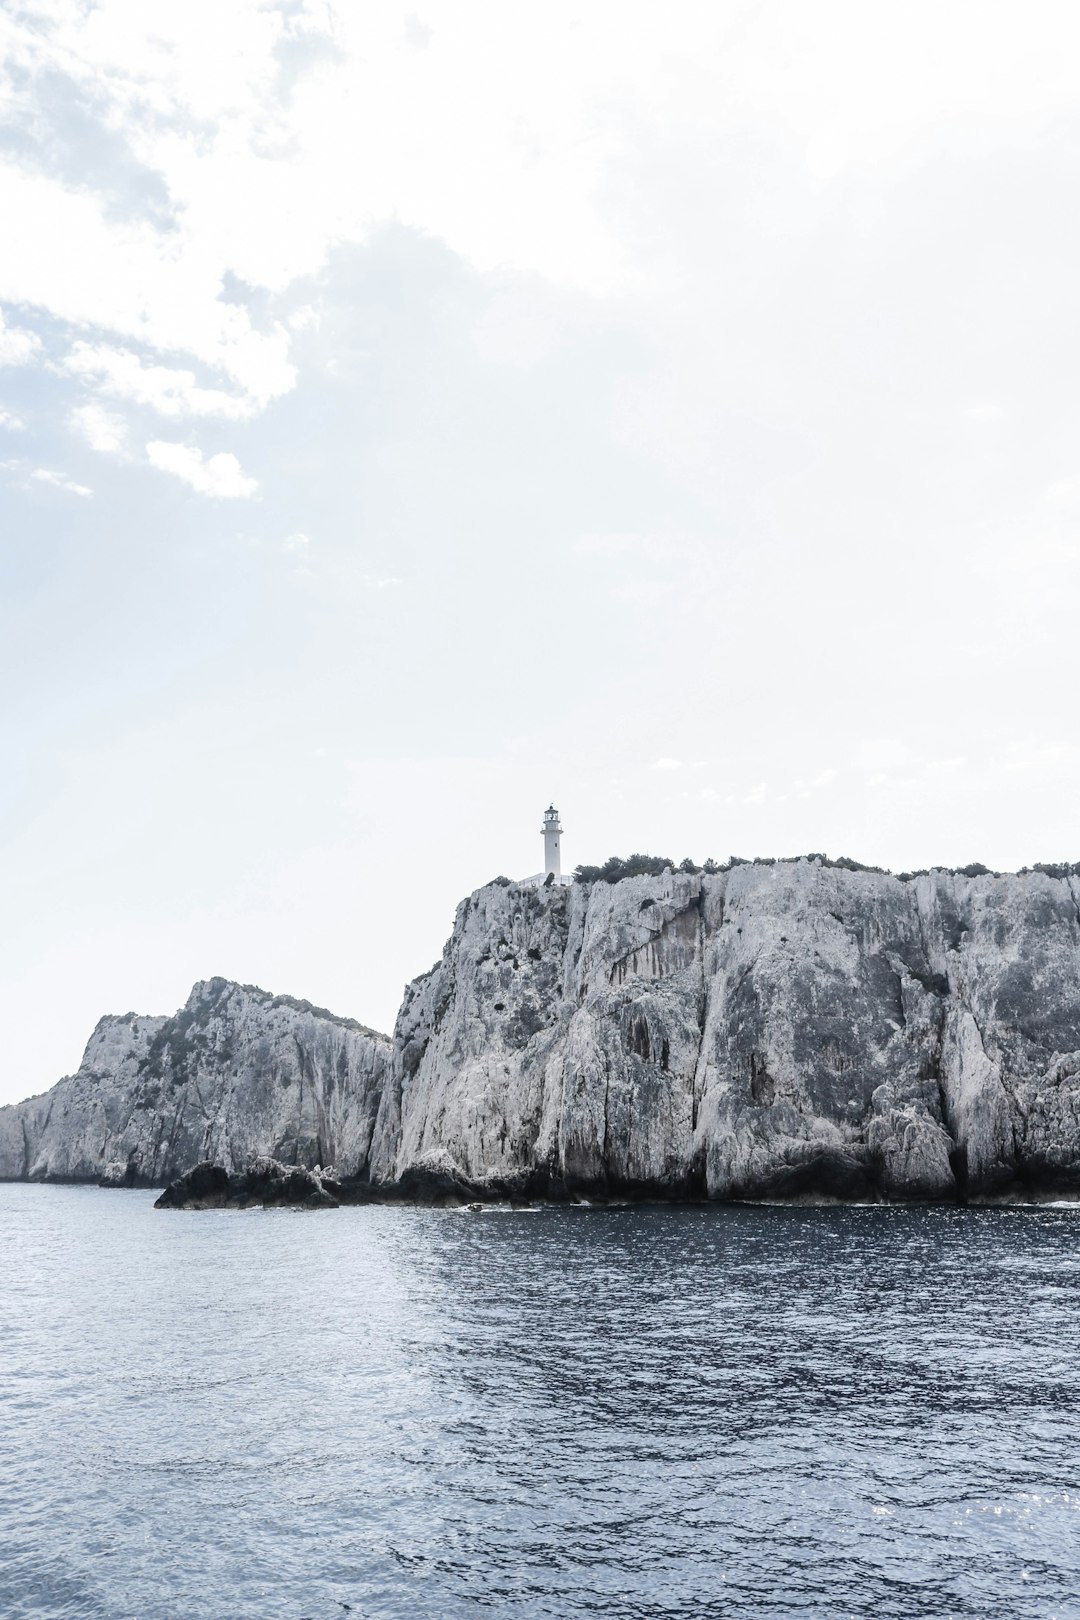 Cliff photo spot Lefkada MV Panagiotis